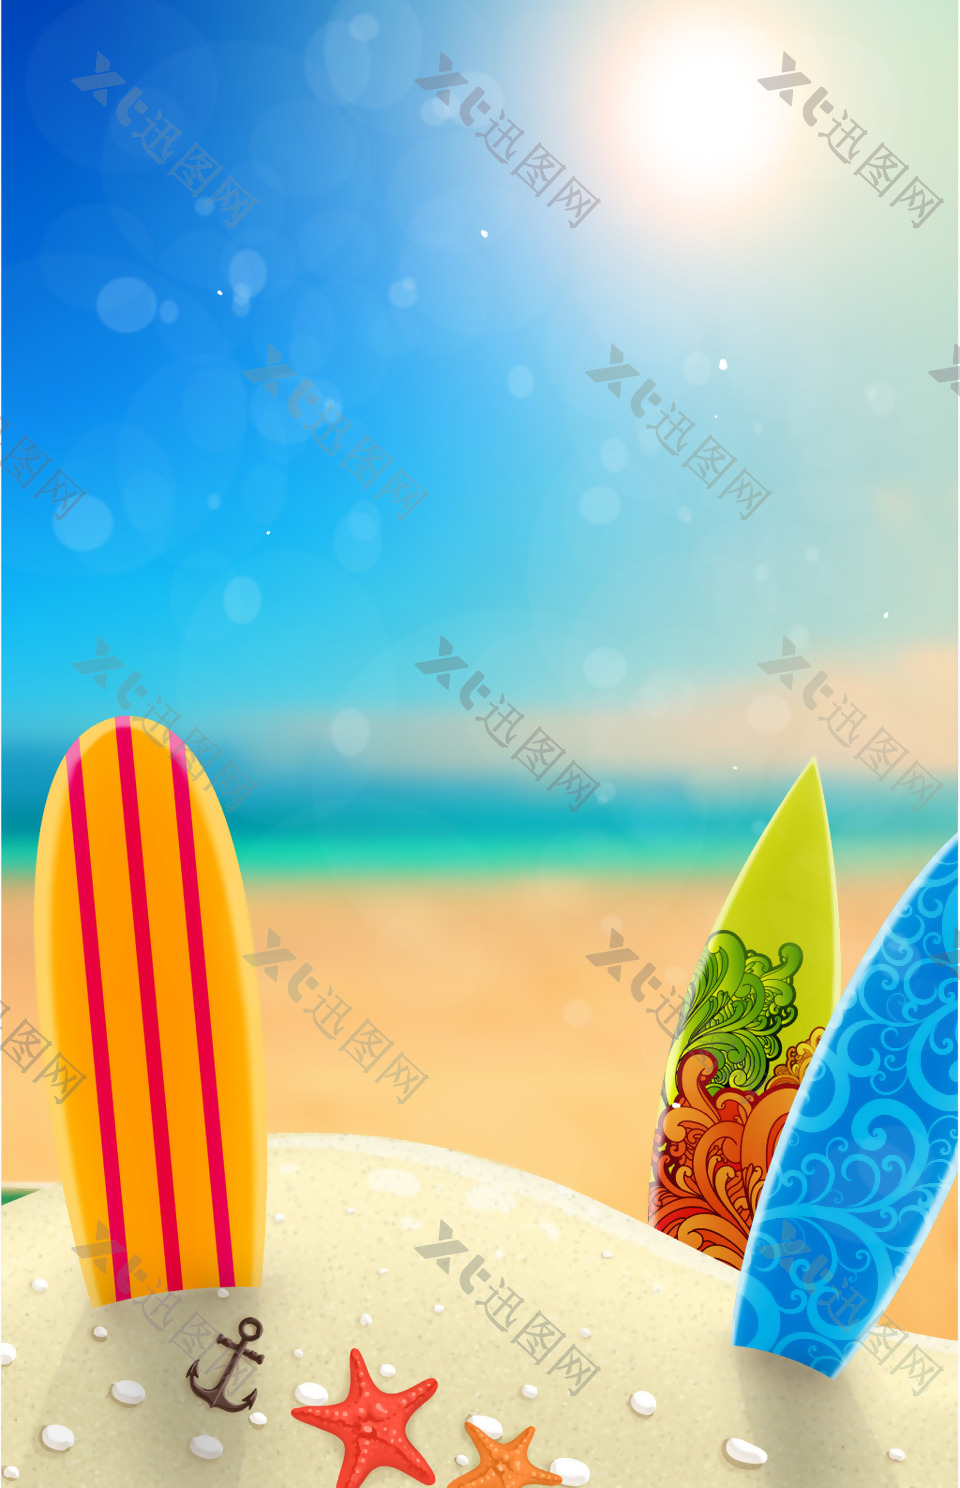 夏日沙滩海报背景素材